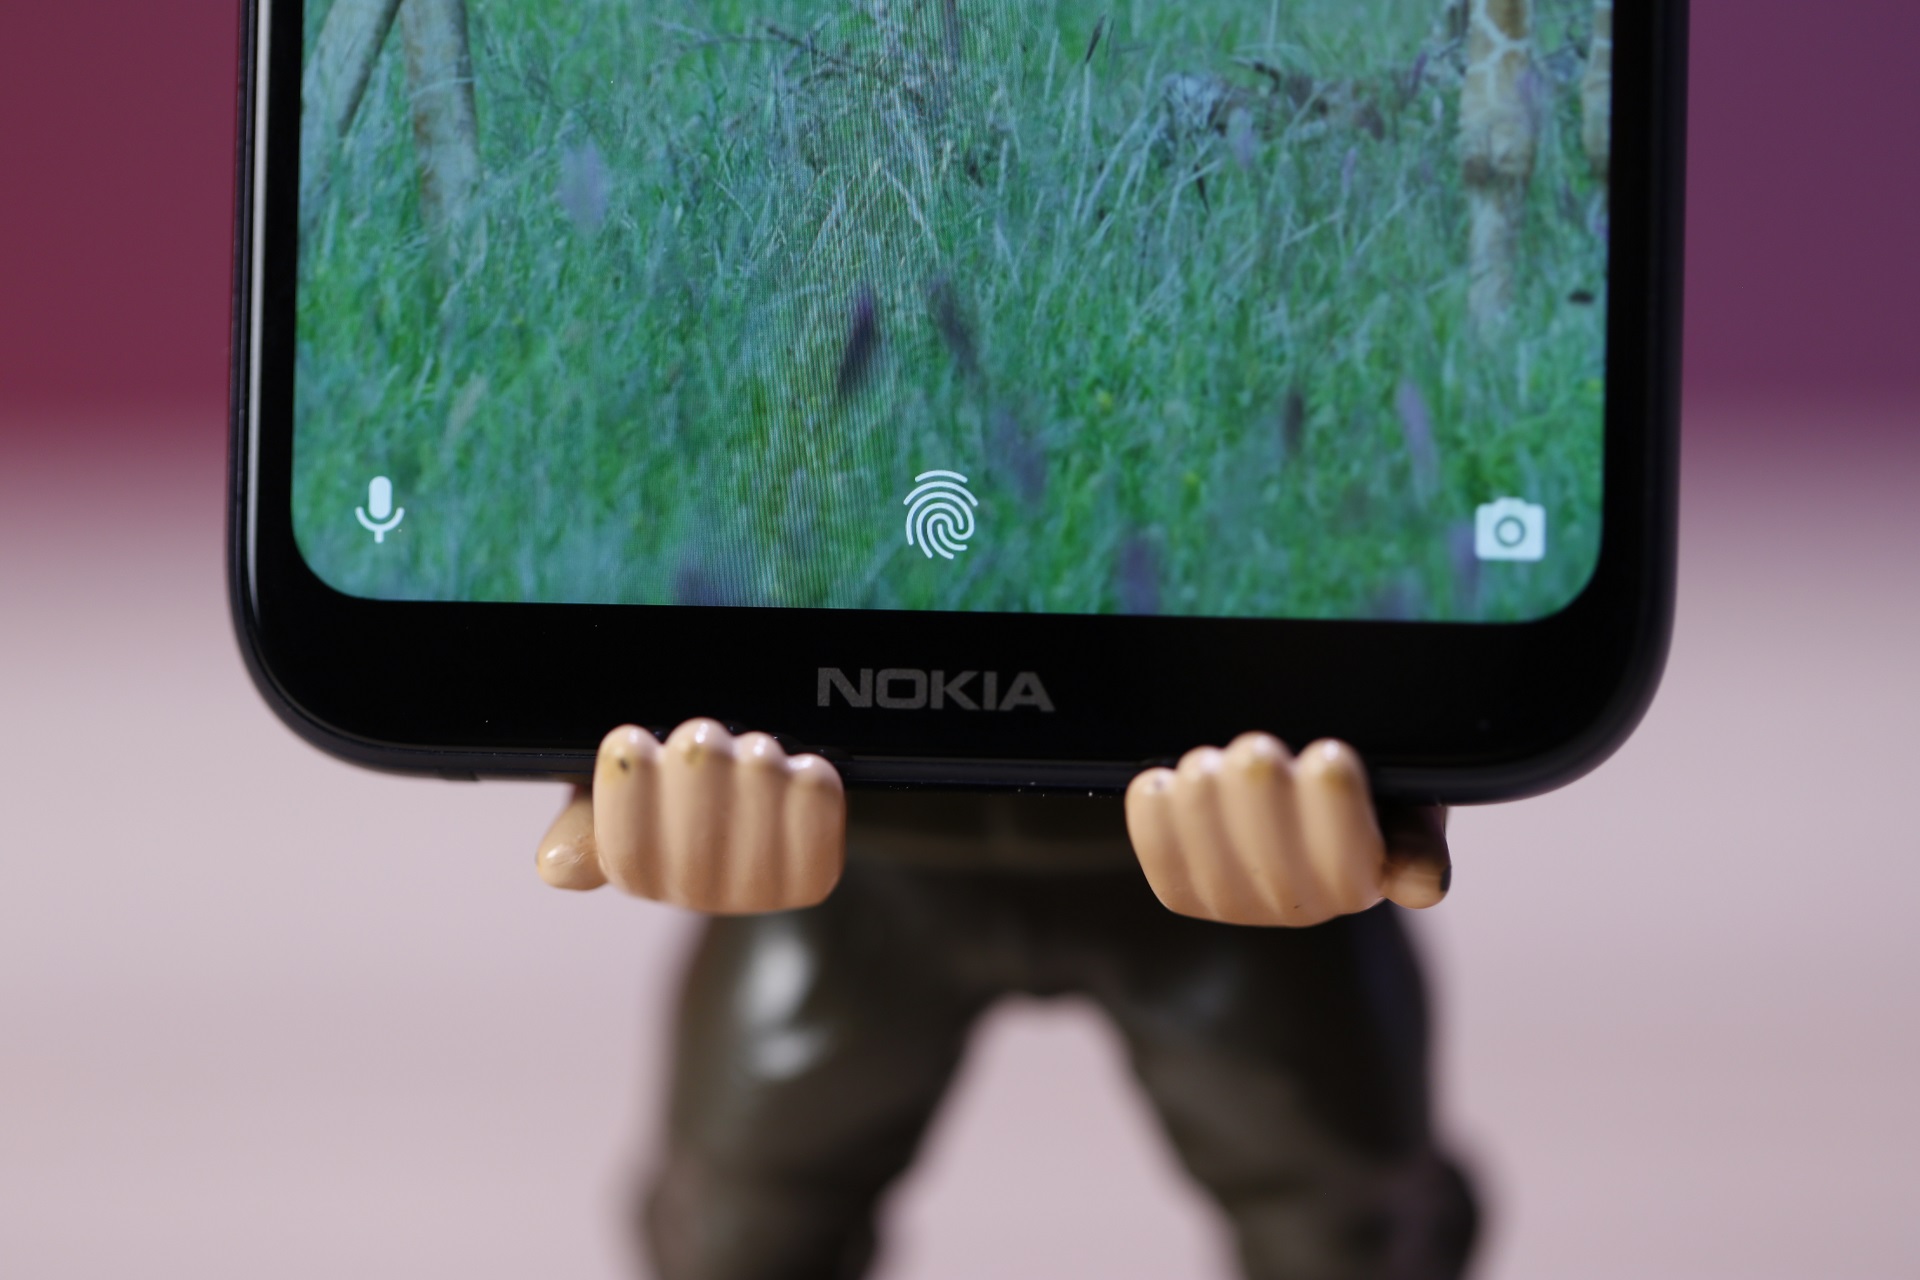 مراجعة هاتف Nokia 6.1 Plus (X6) من الفئة الاقتصادية - التصميم والشاشة